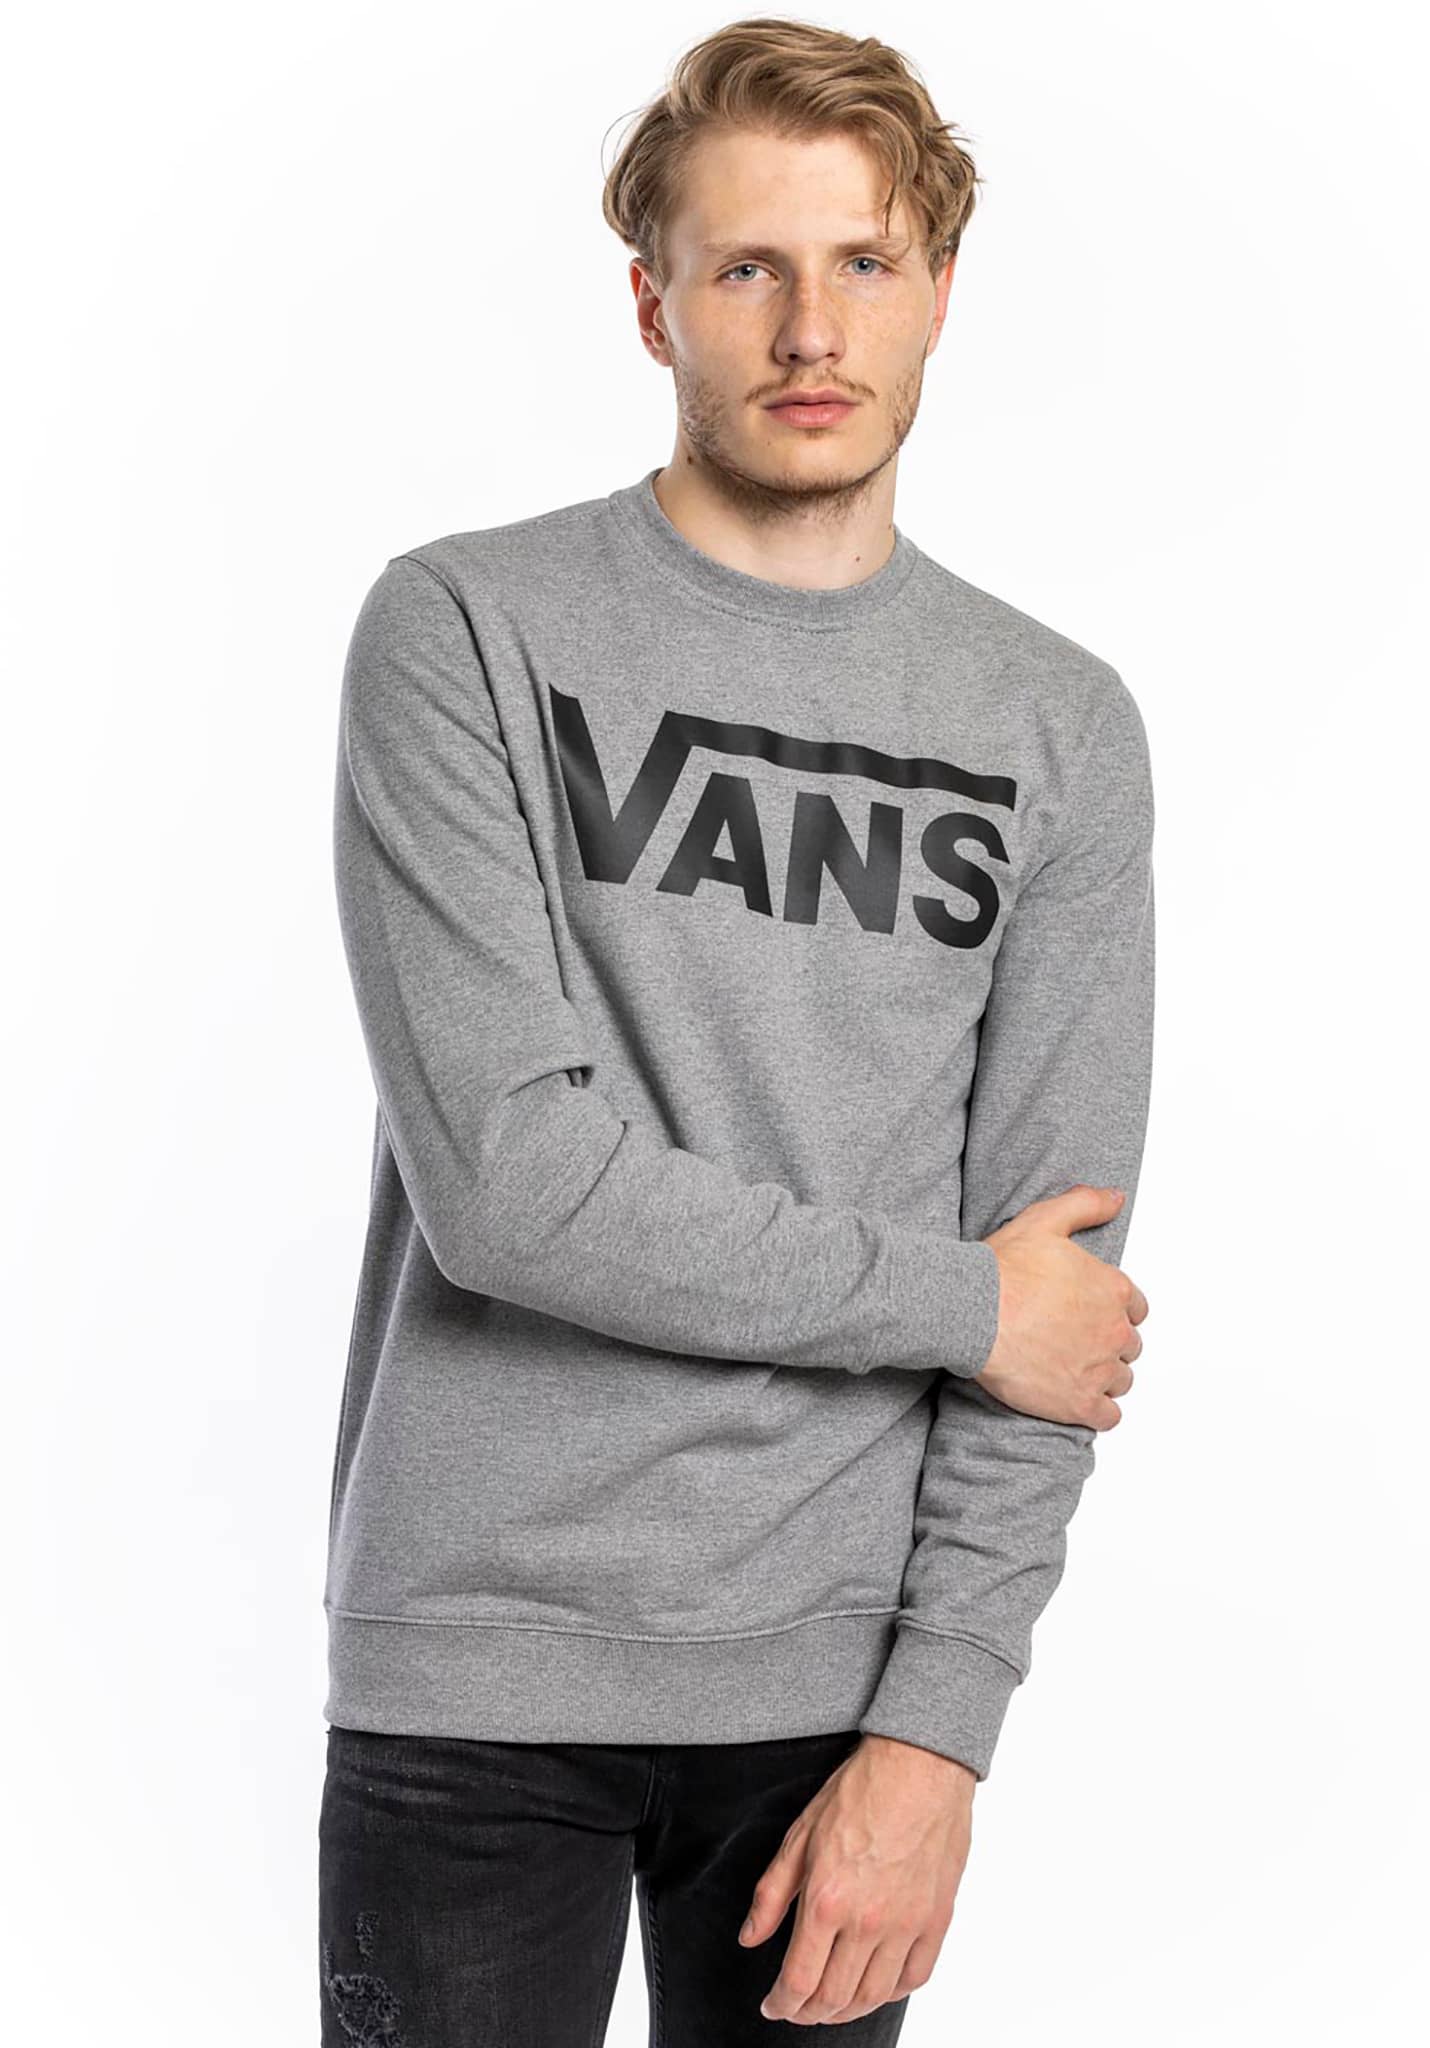 Vans Classic Crew II Sweatshirt zement heather/schwarz S